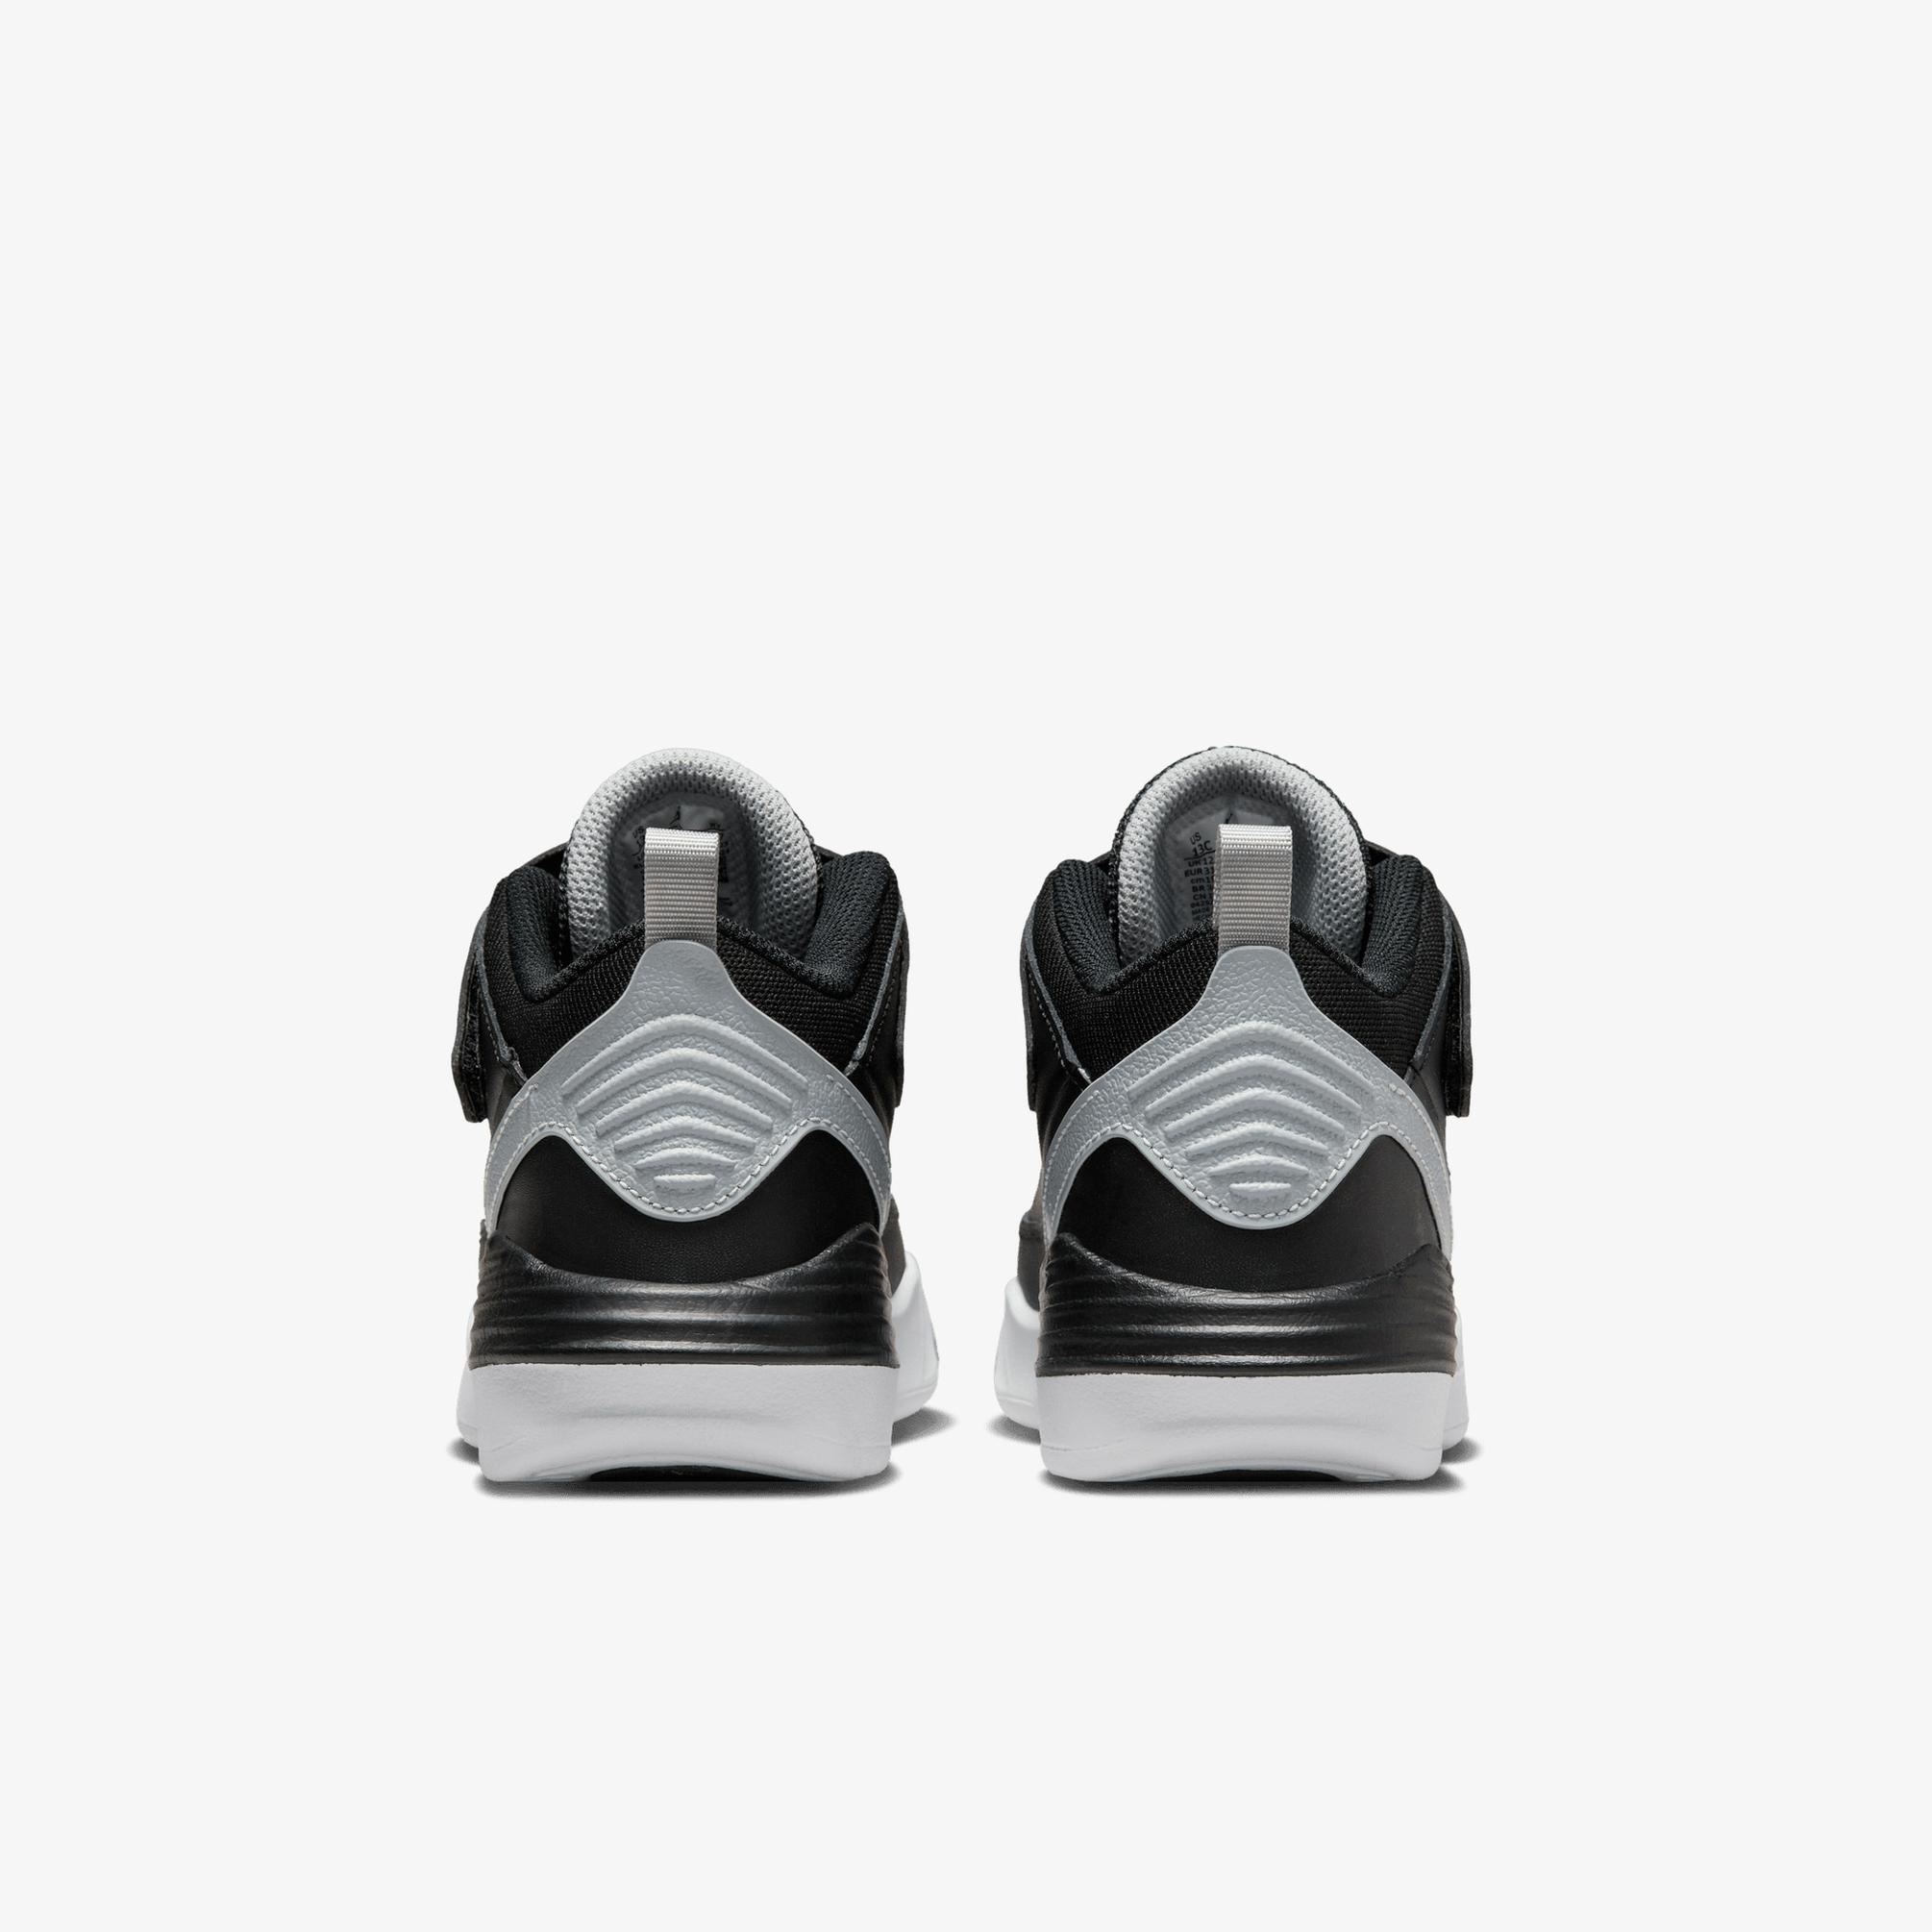  Jordan Max Aura 5 Çocuk Siyah Spor Ayakkabı